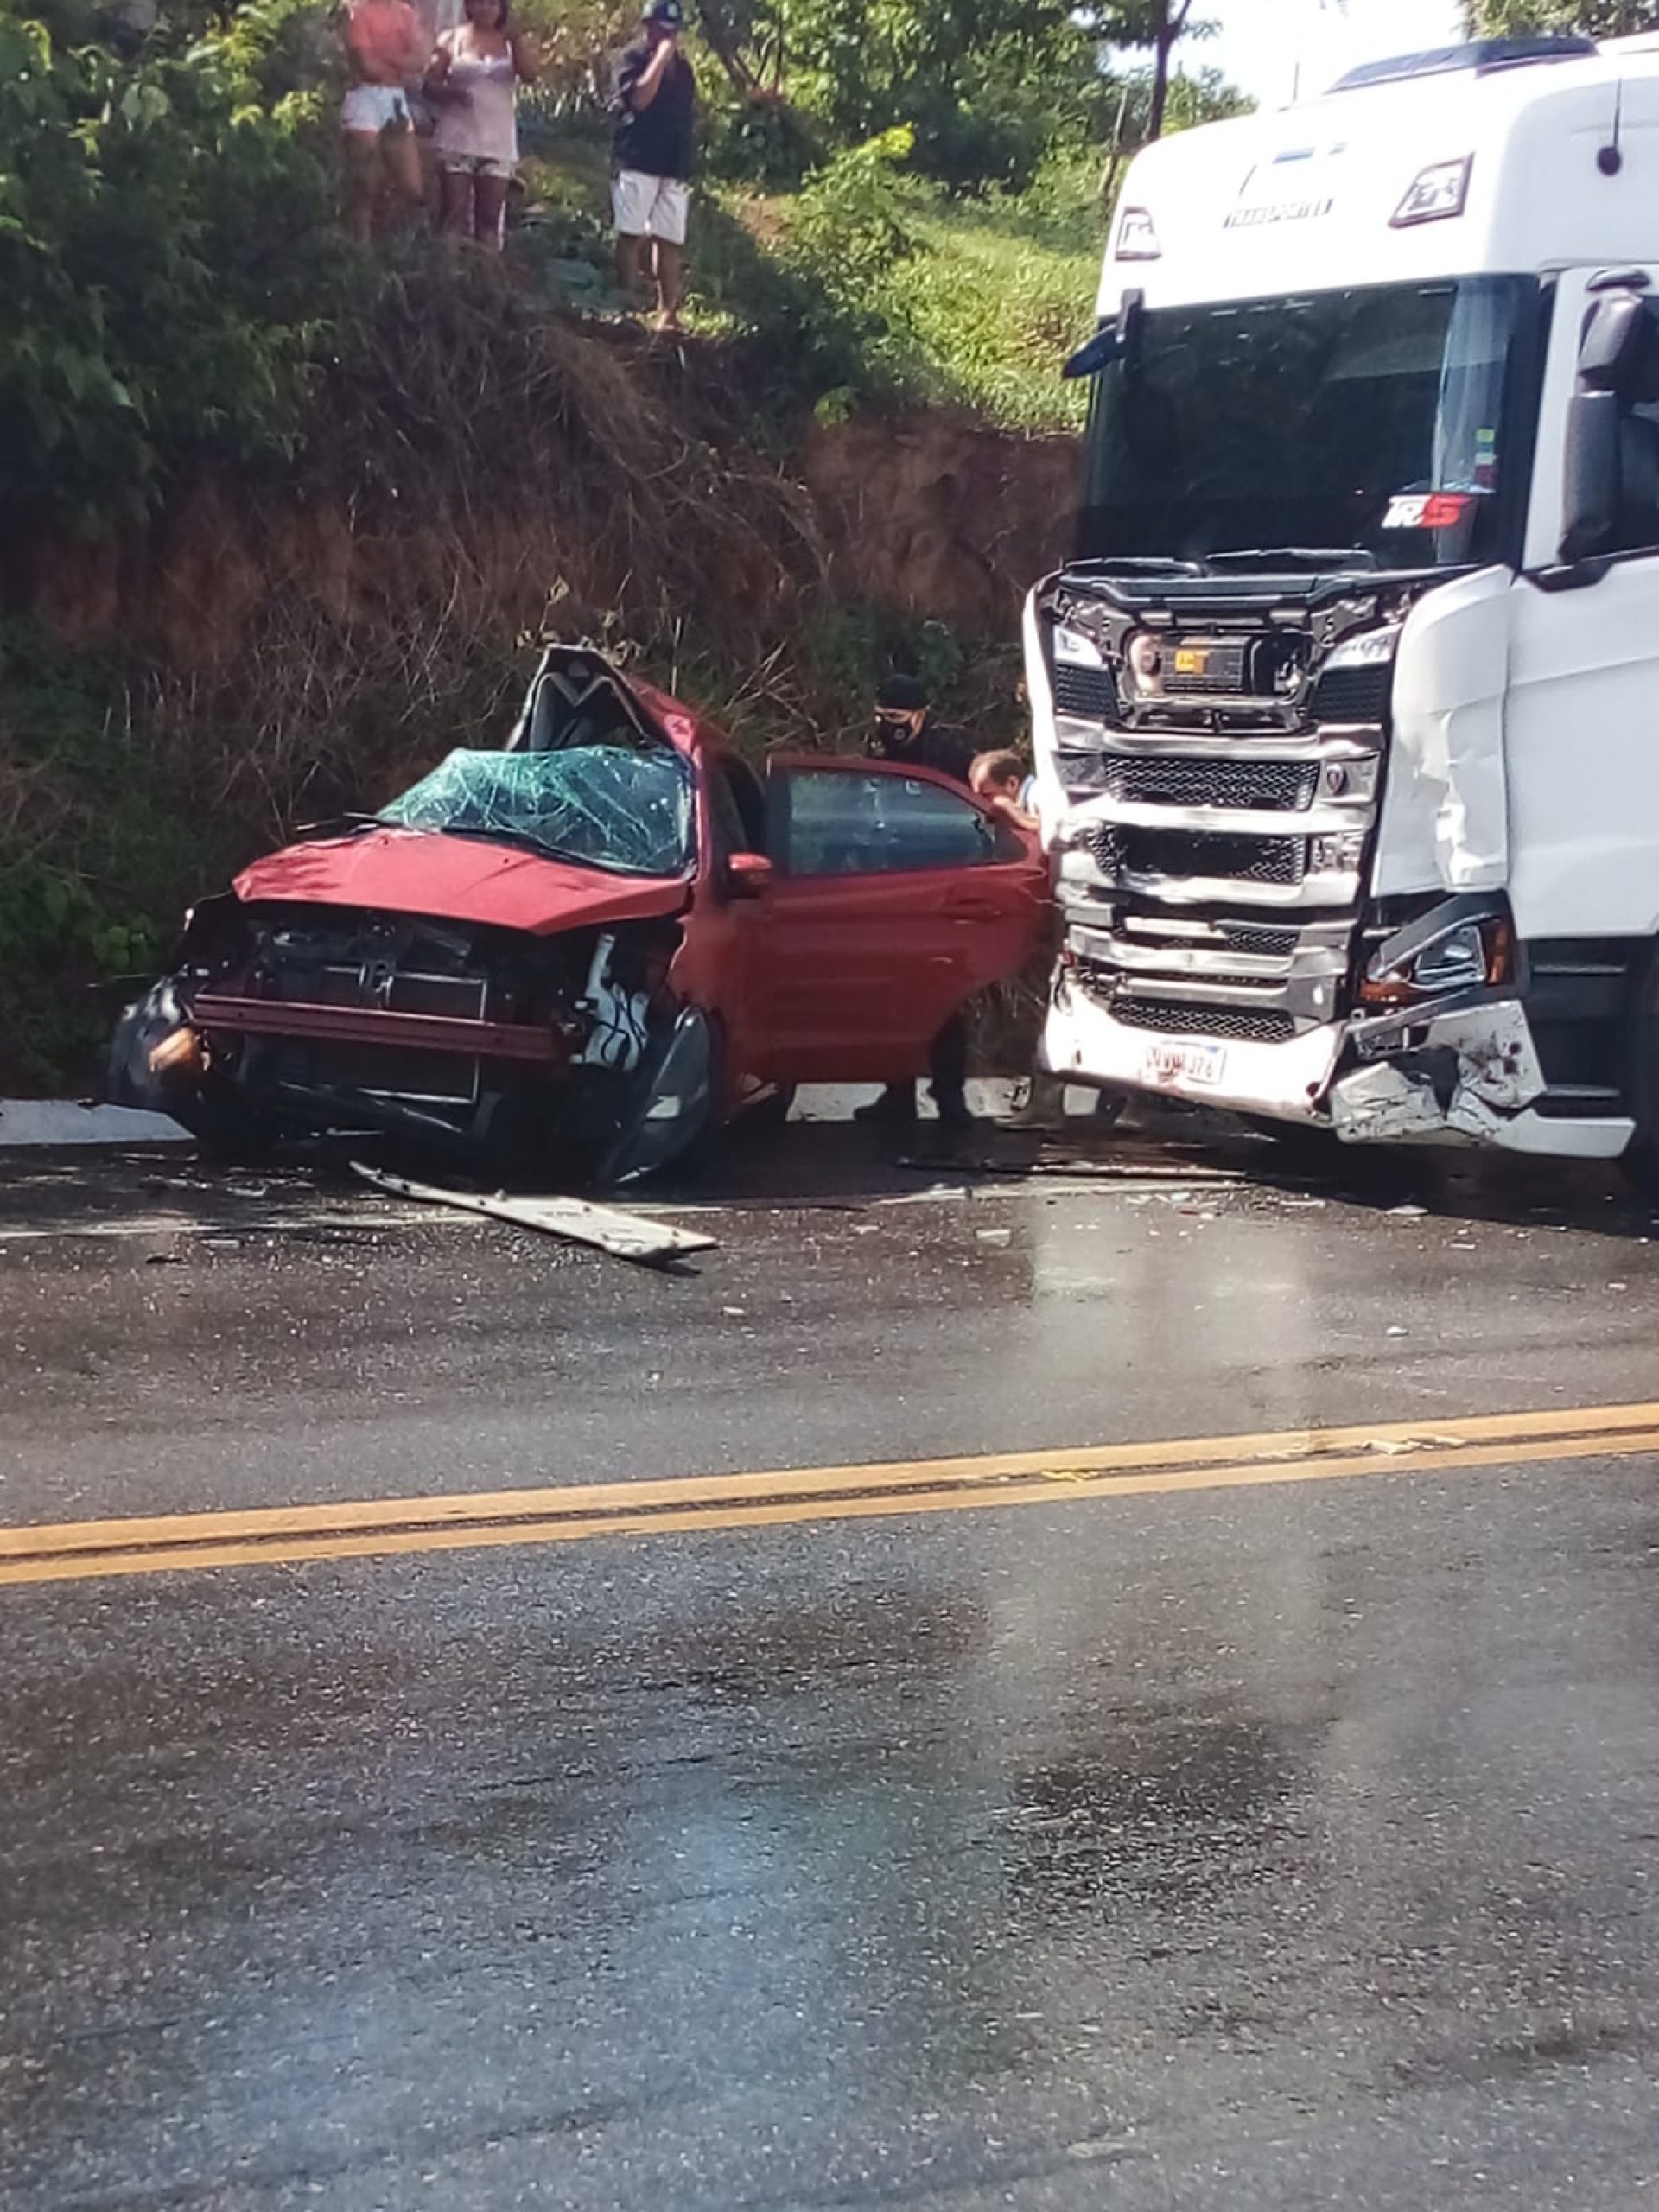 Colisão frontal entre uma carreta e um veículo de passeio ocasionou a morte de duas pessoas.